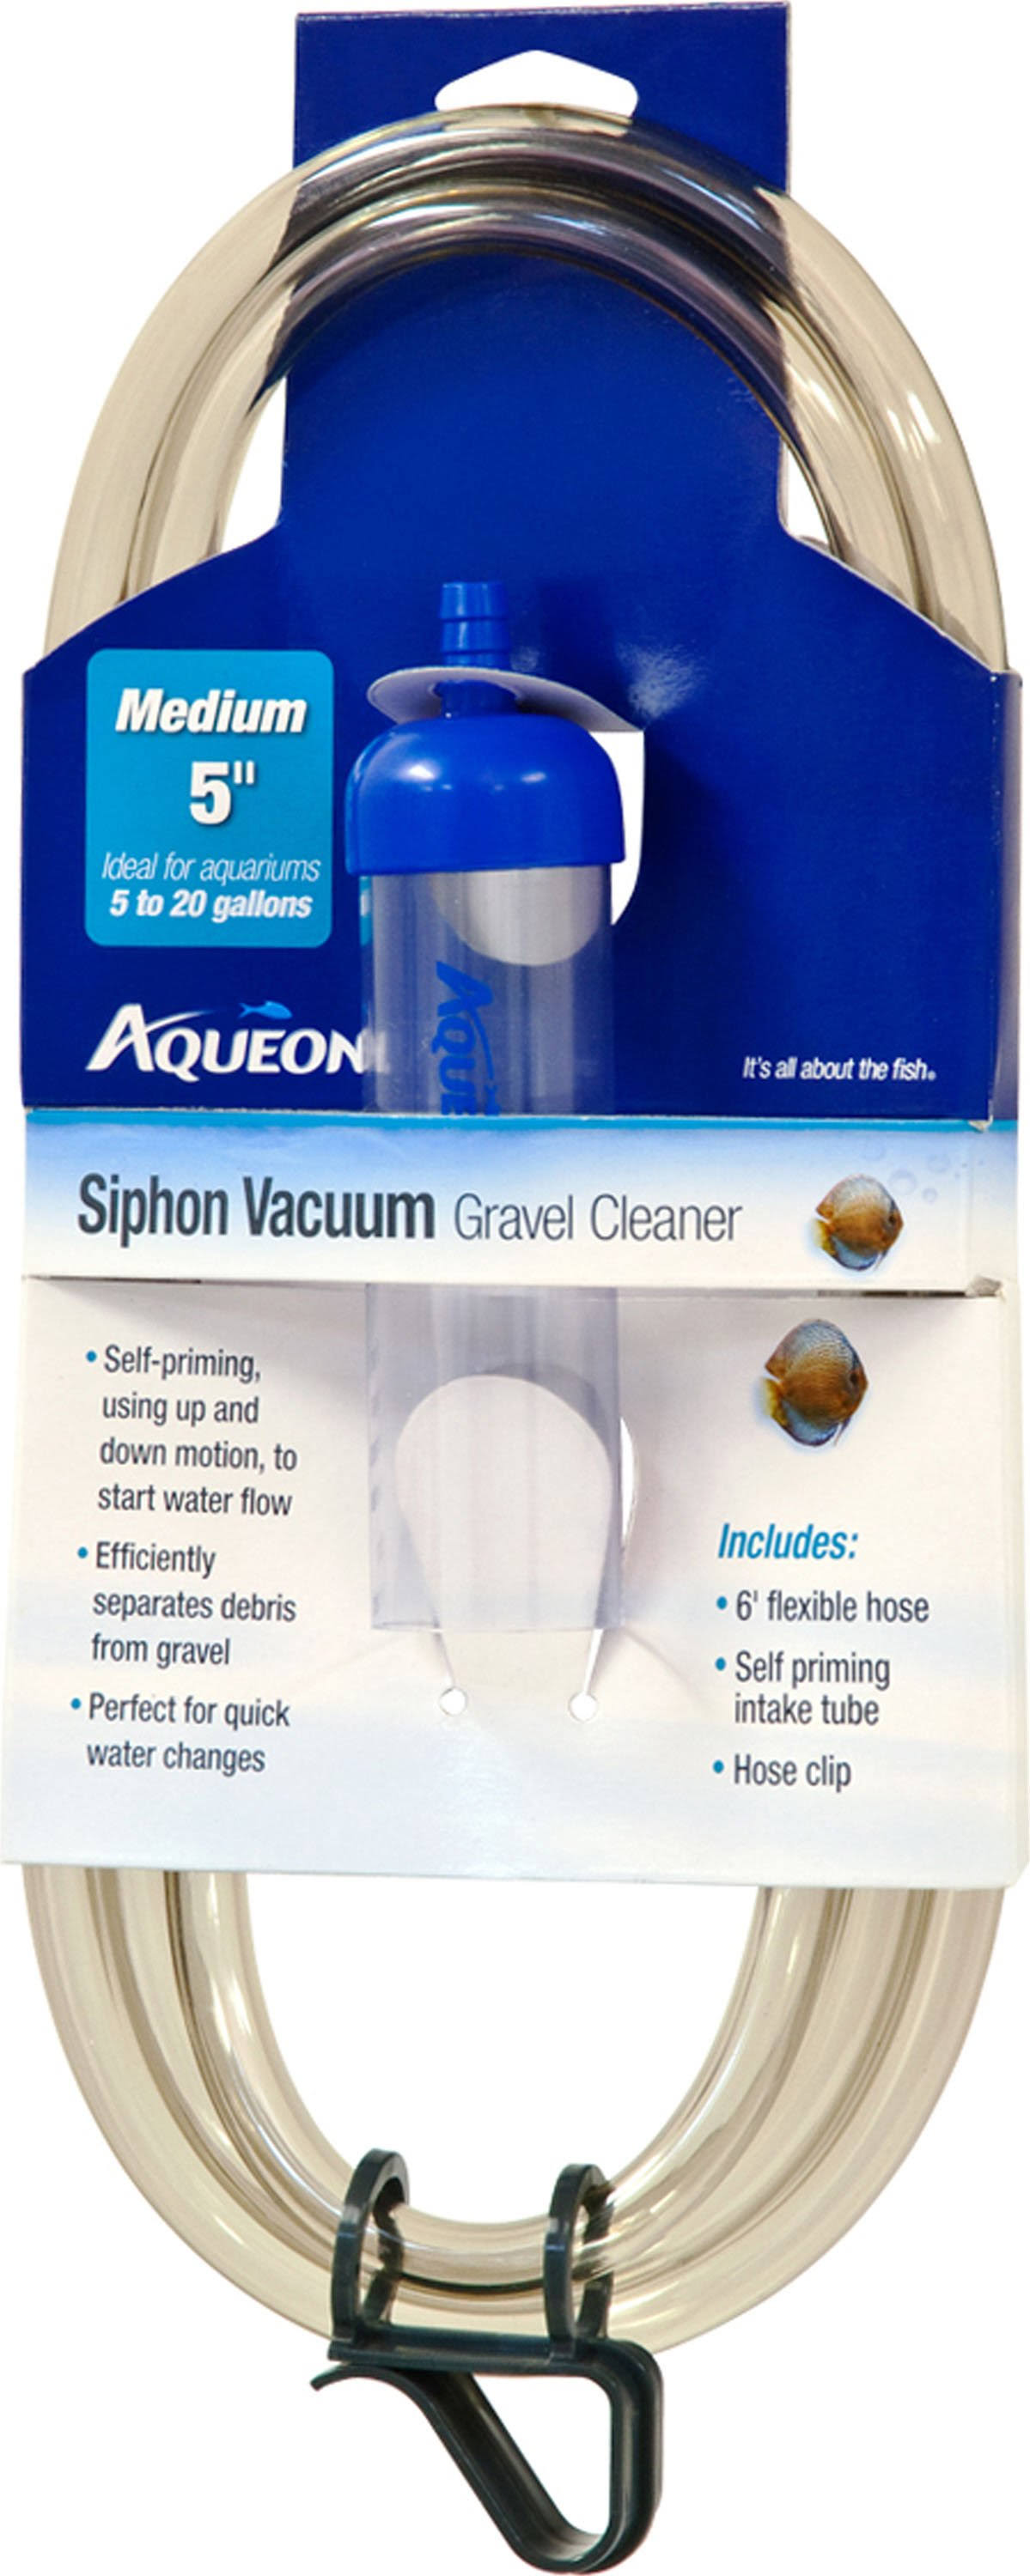 Aqueon Mini Siphon Vacuum Aquarium Gravel Cleaner - 5"